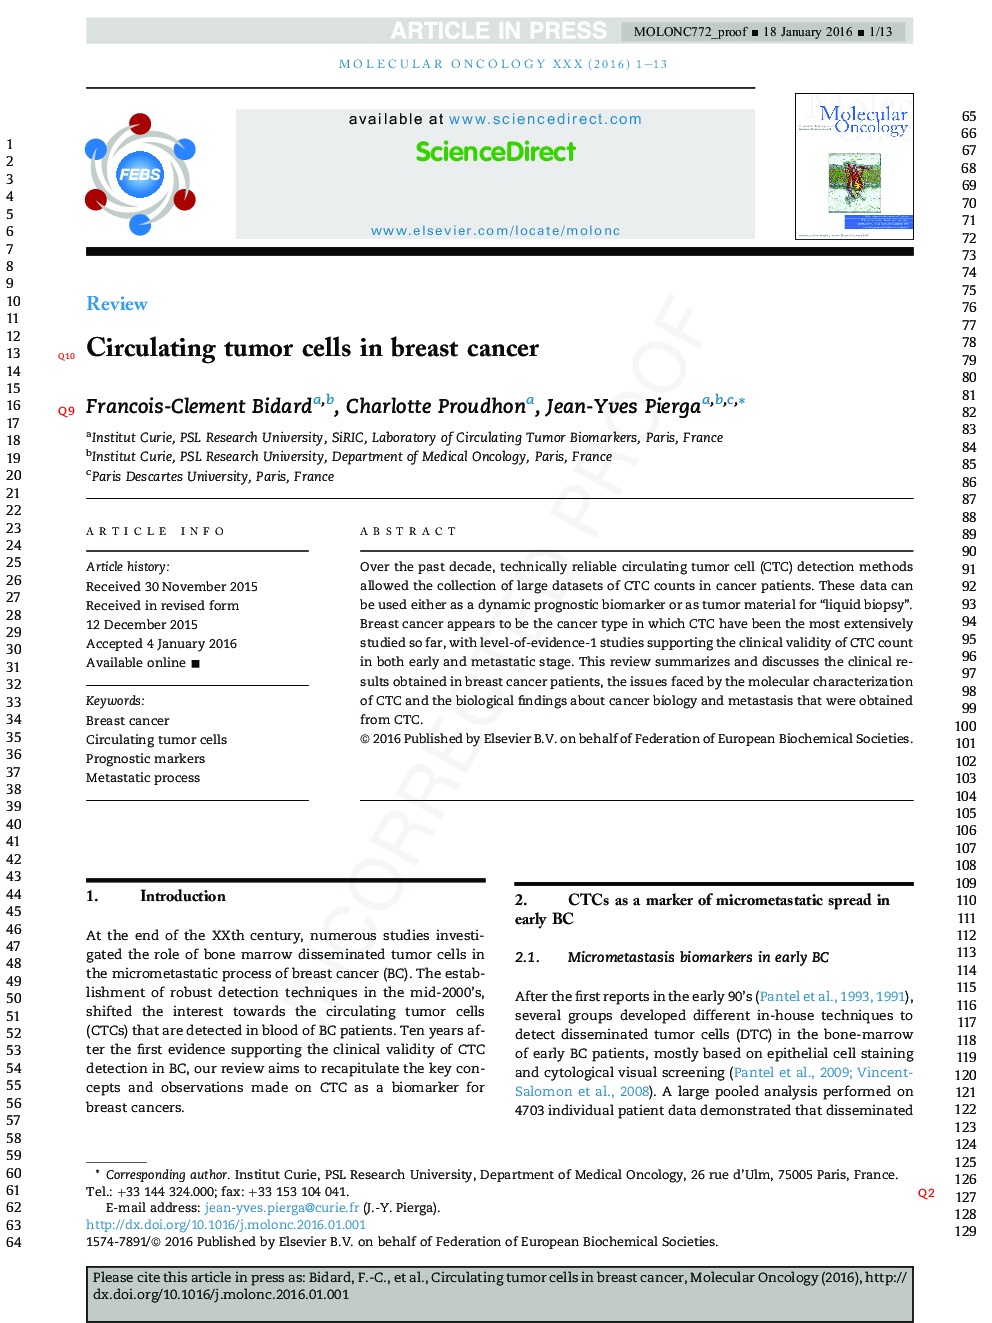 سلول های توموری در سرطان سینه 